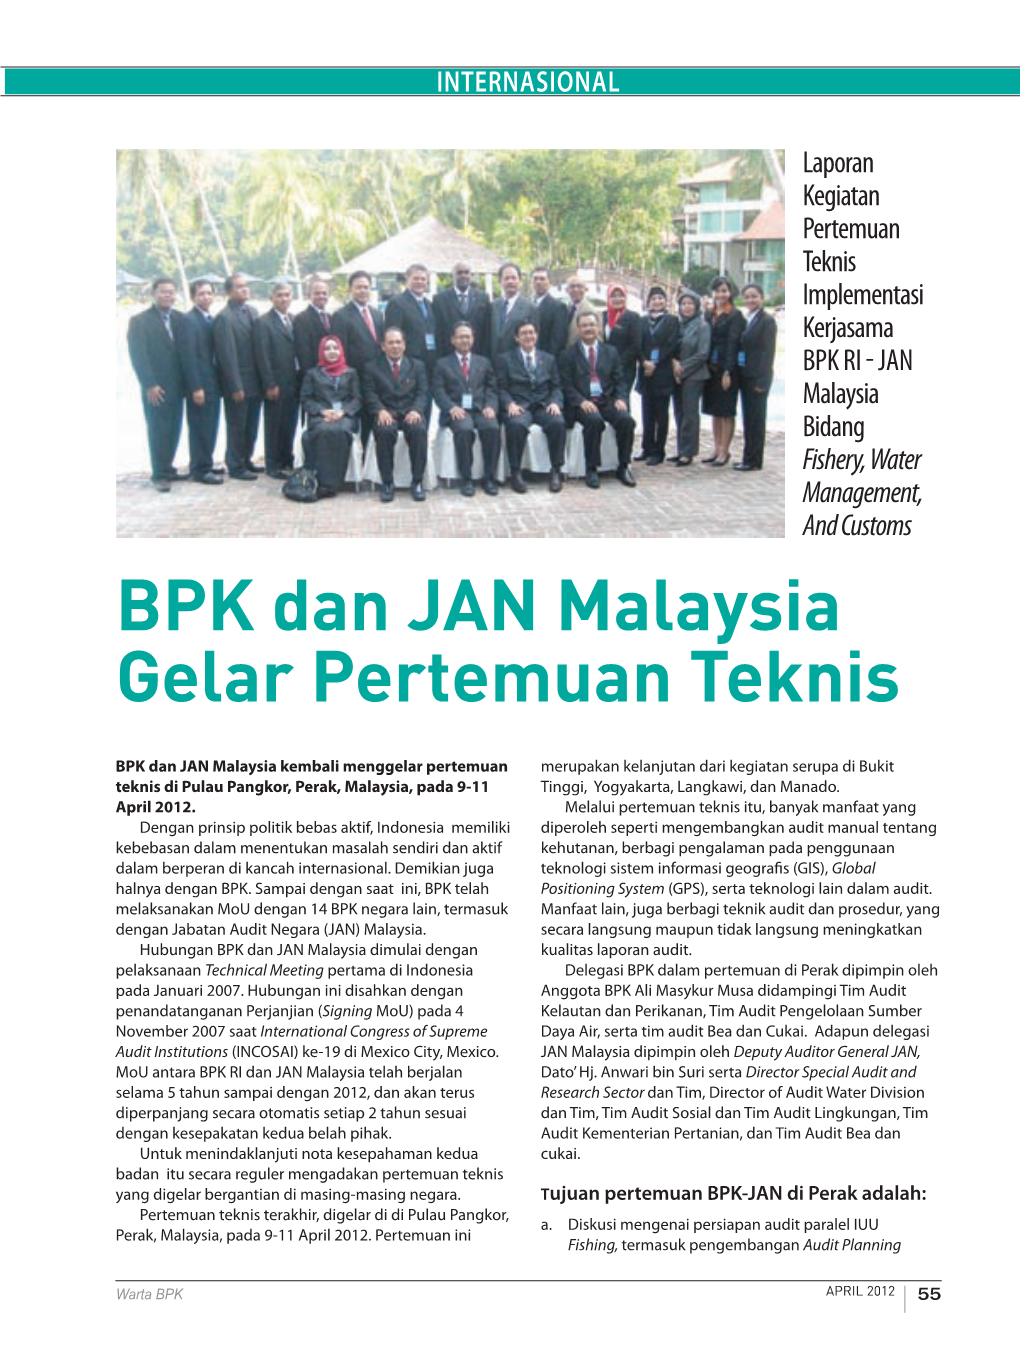 BPK Dan JAN Malaysia Gelar Pertemuan Teknis